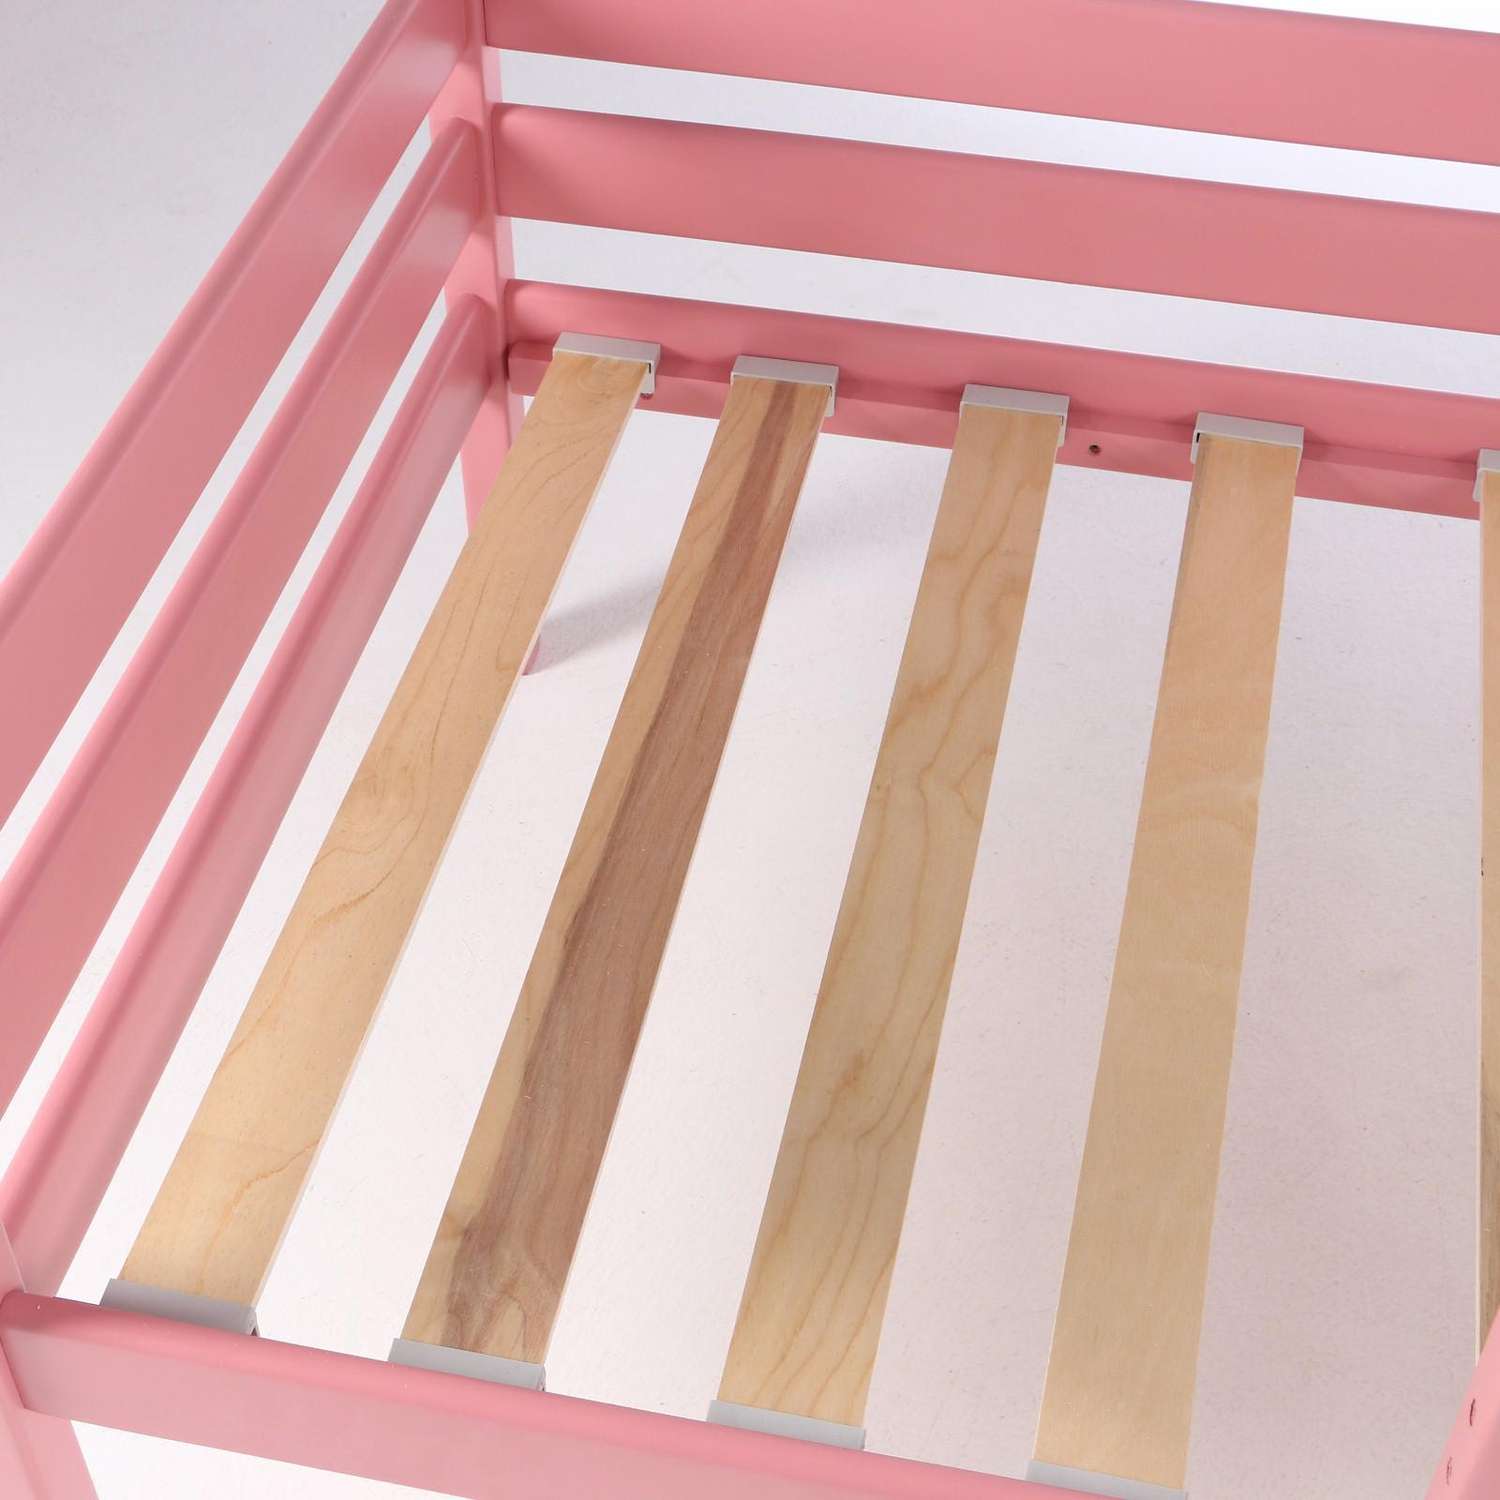 Кровать Клик Мебель Сева спальное место 1400х800 цвет Розовый пастельный Массив Берёзы - фото 5